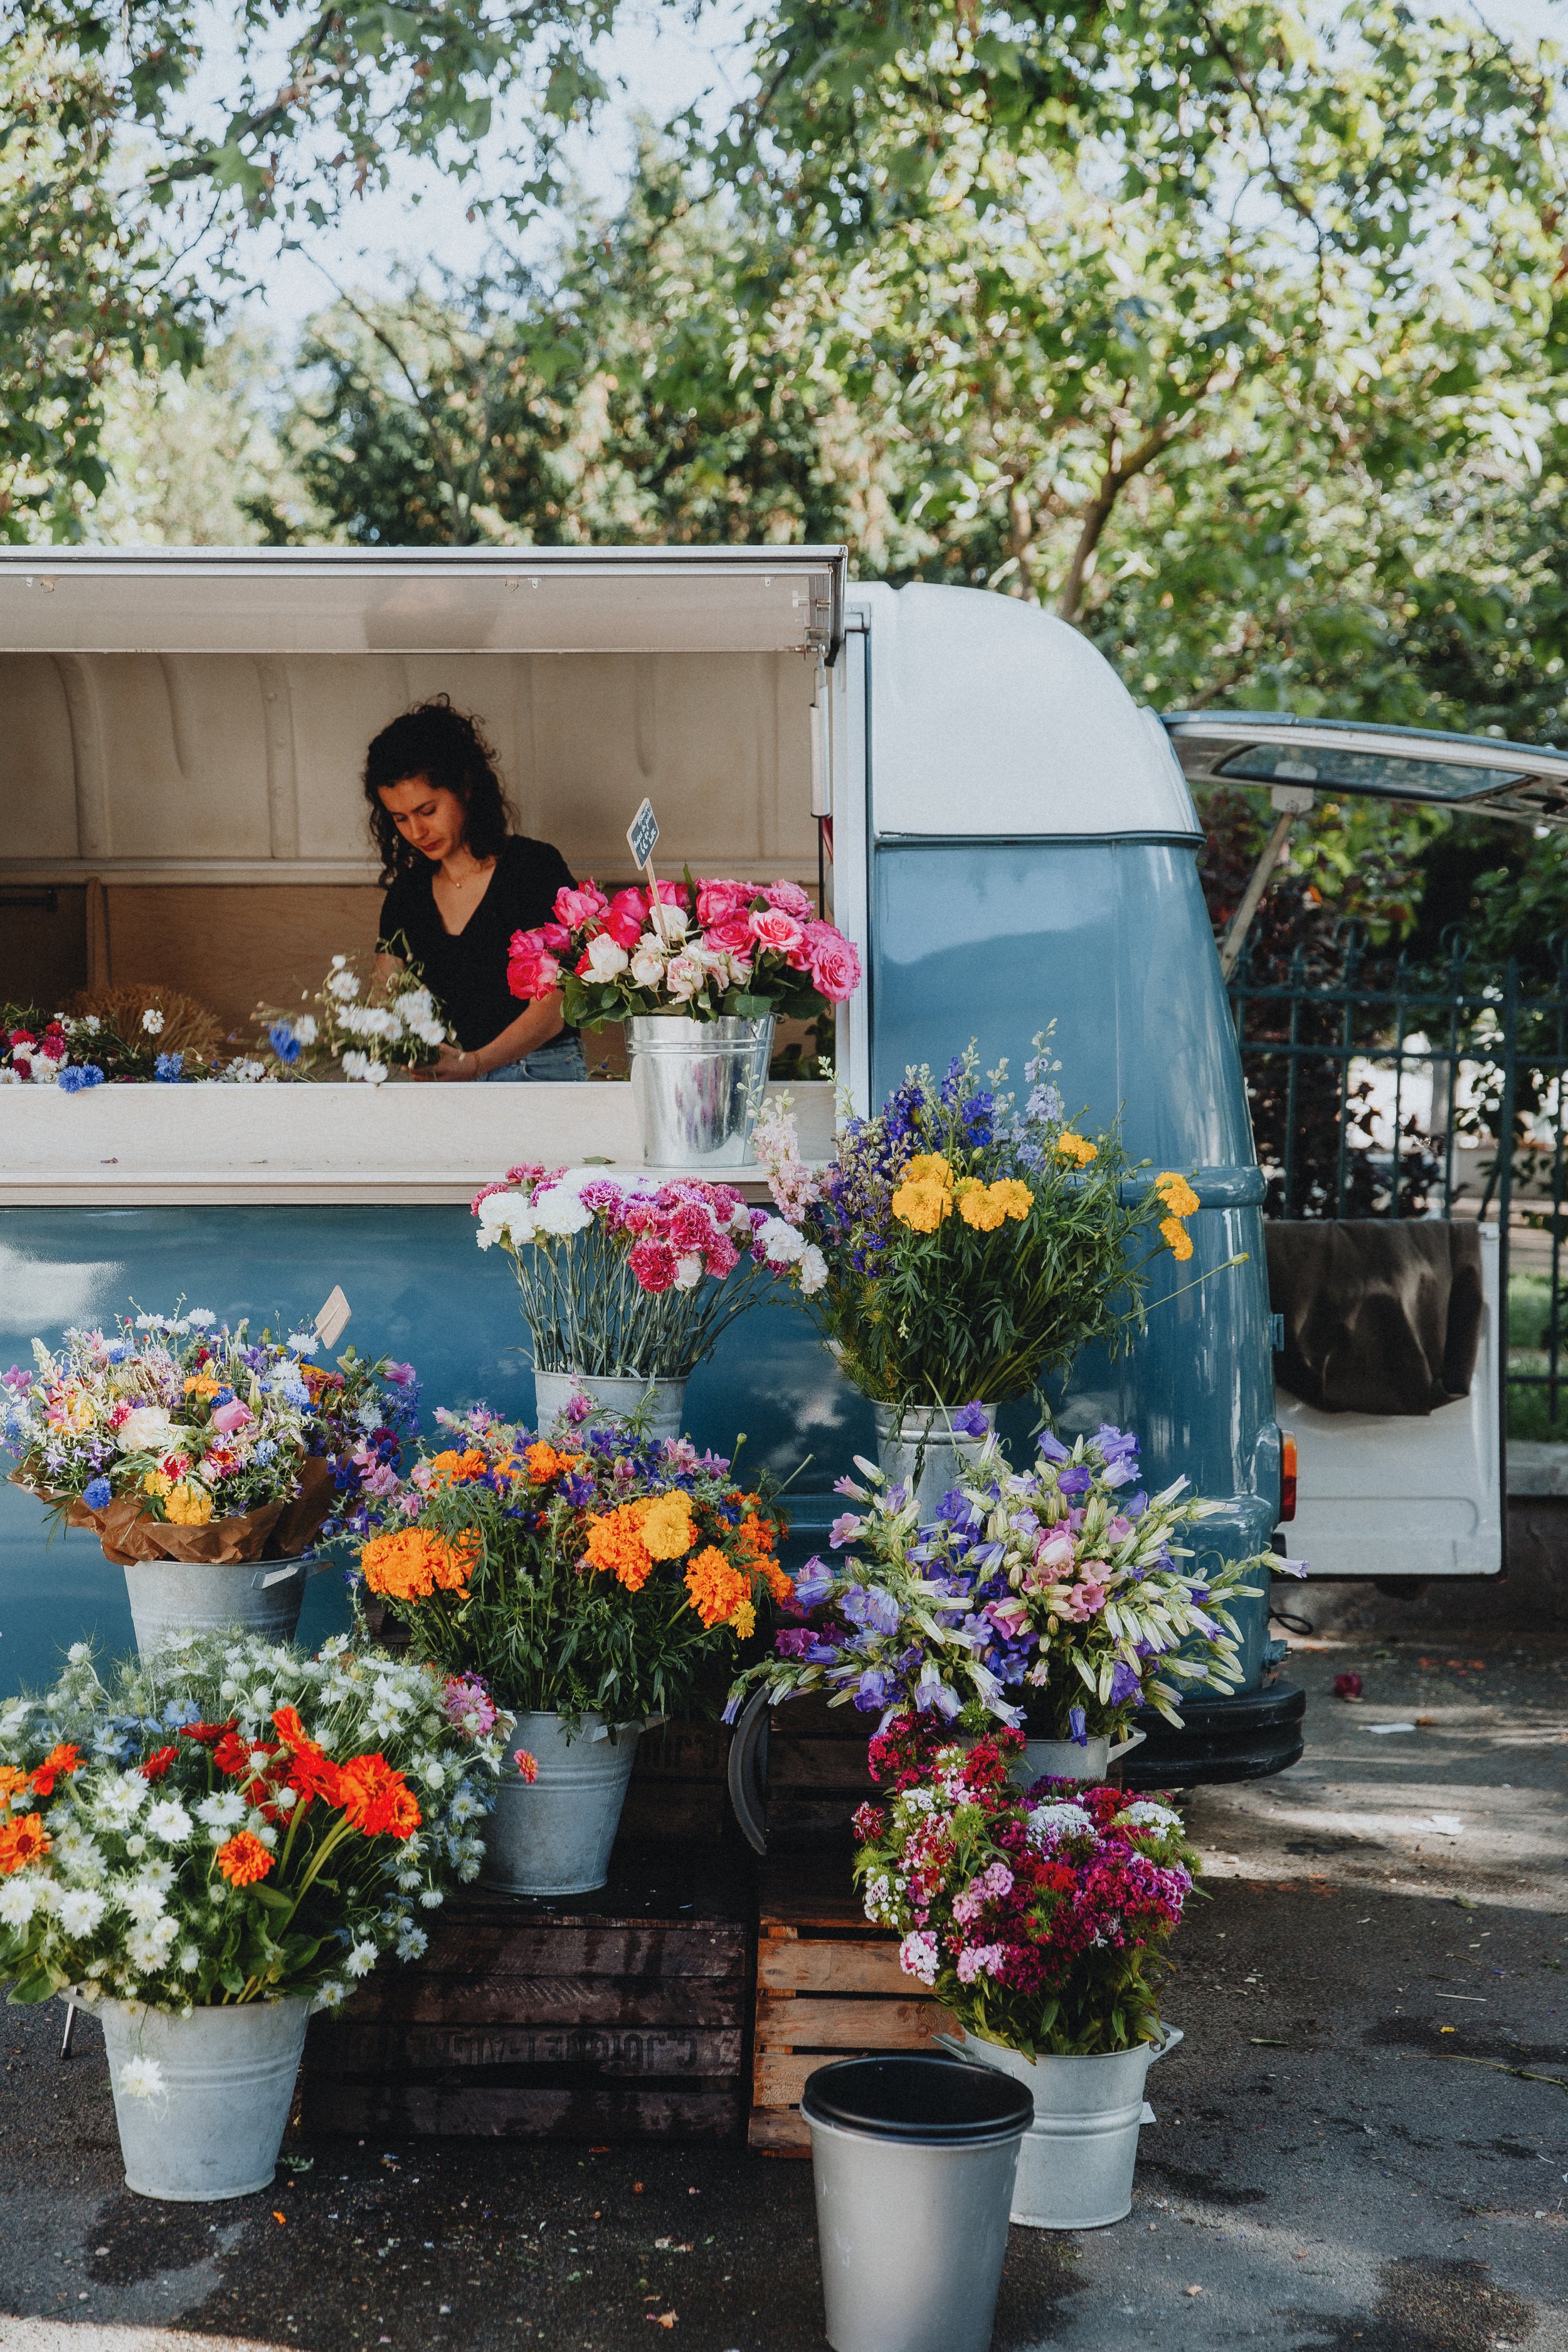 Le camion à fleurs — Dînette magazine